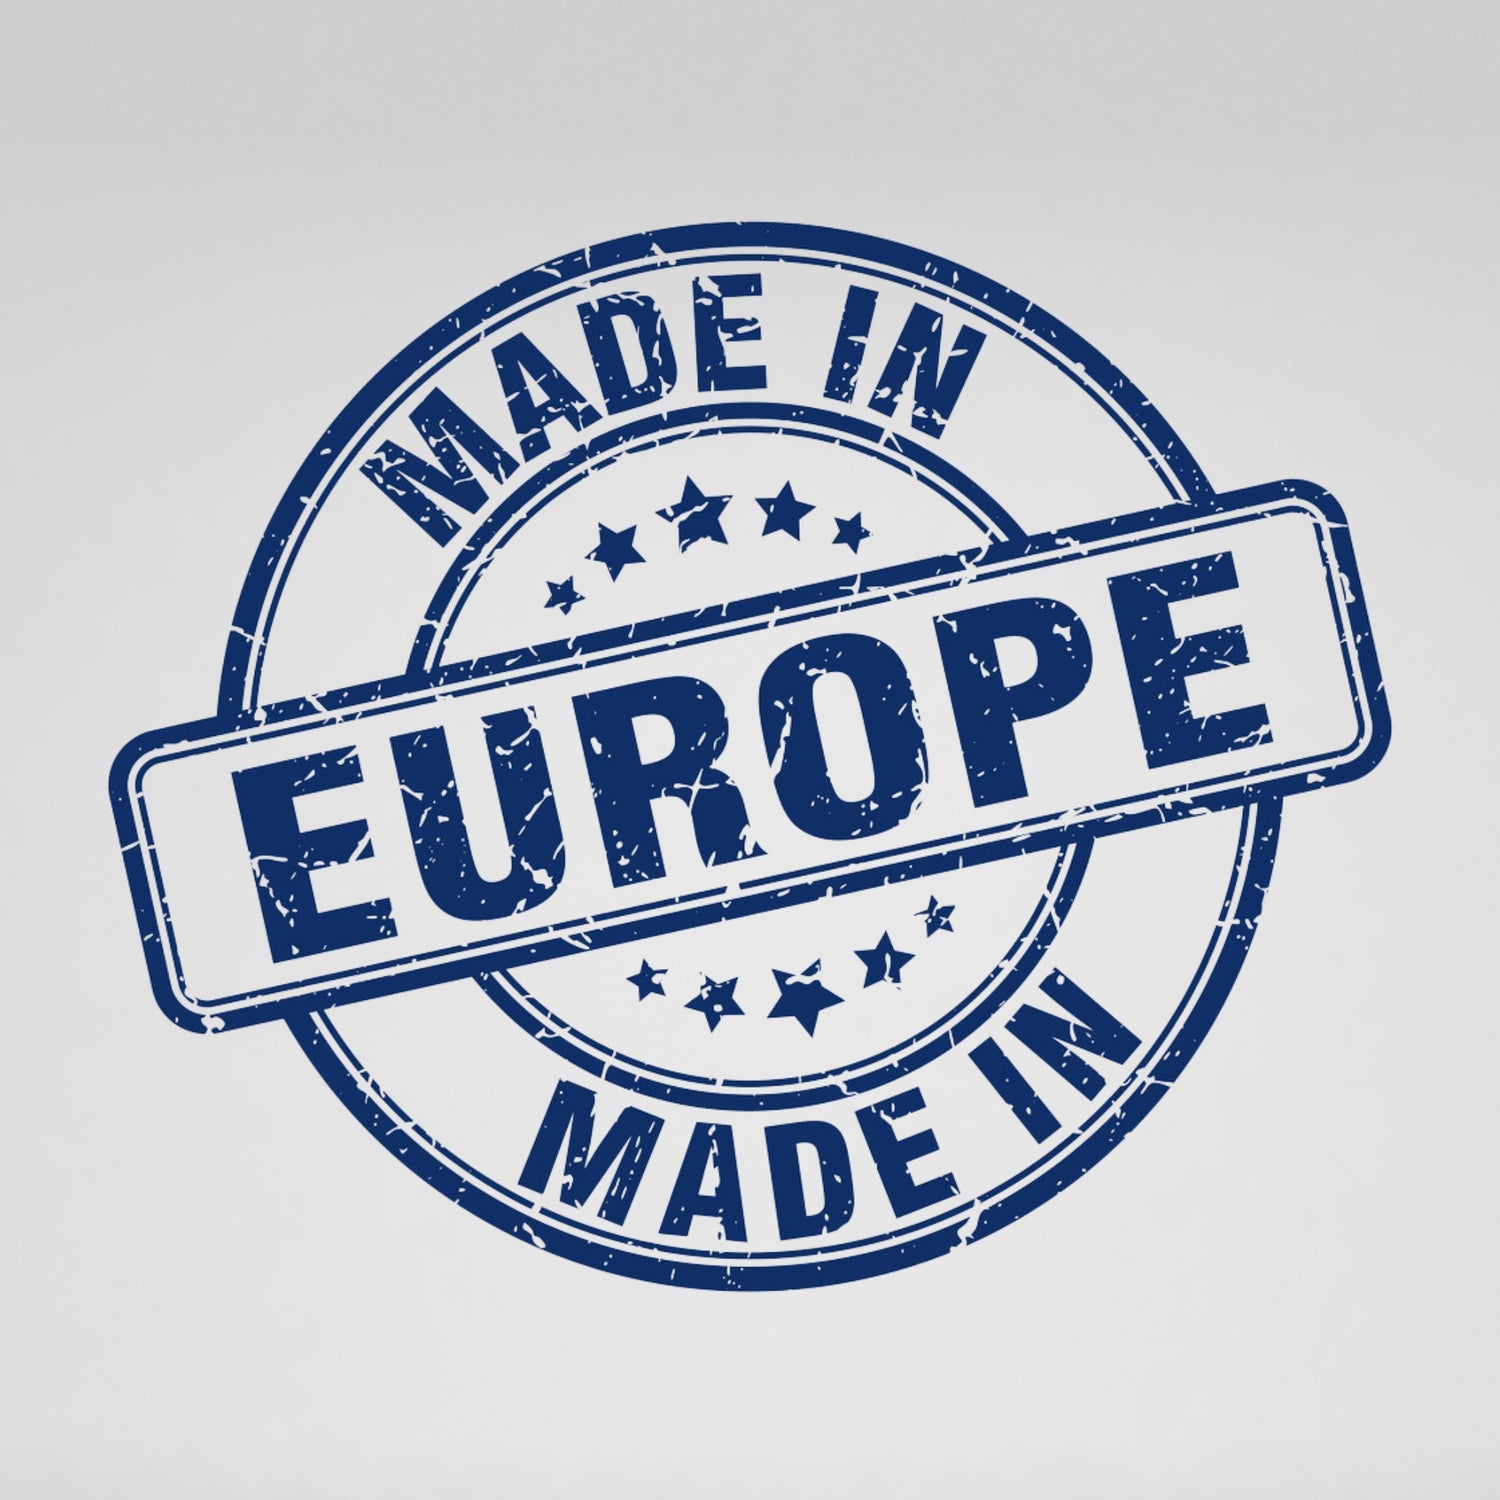 European-made